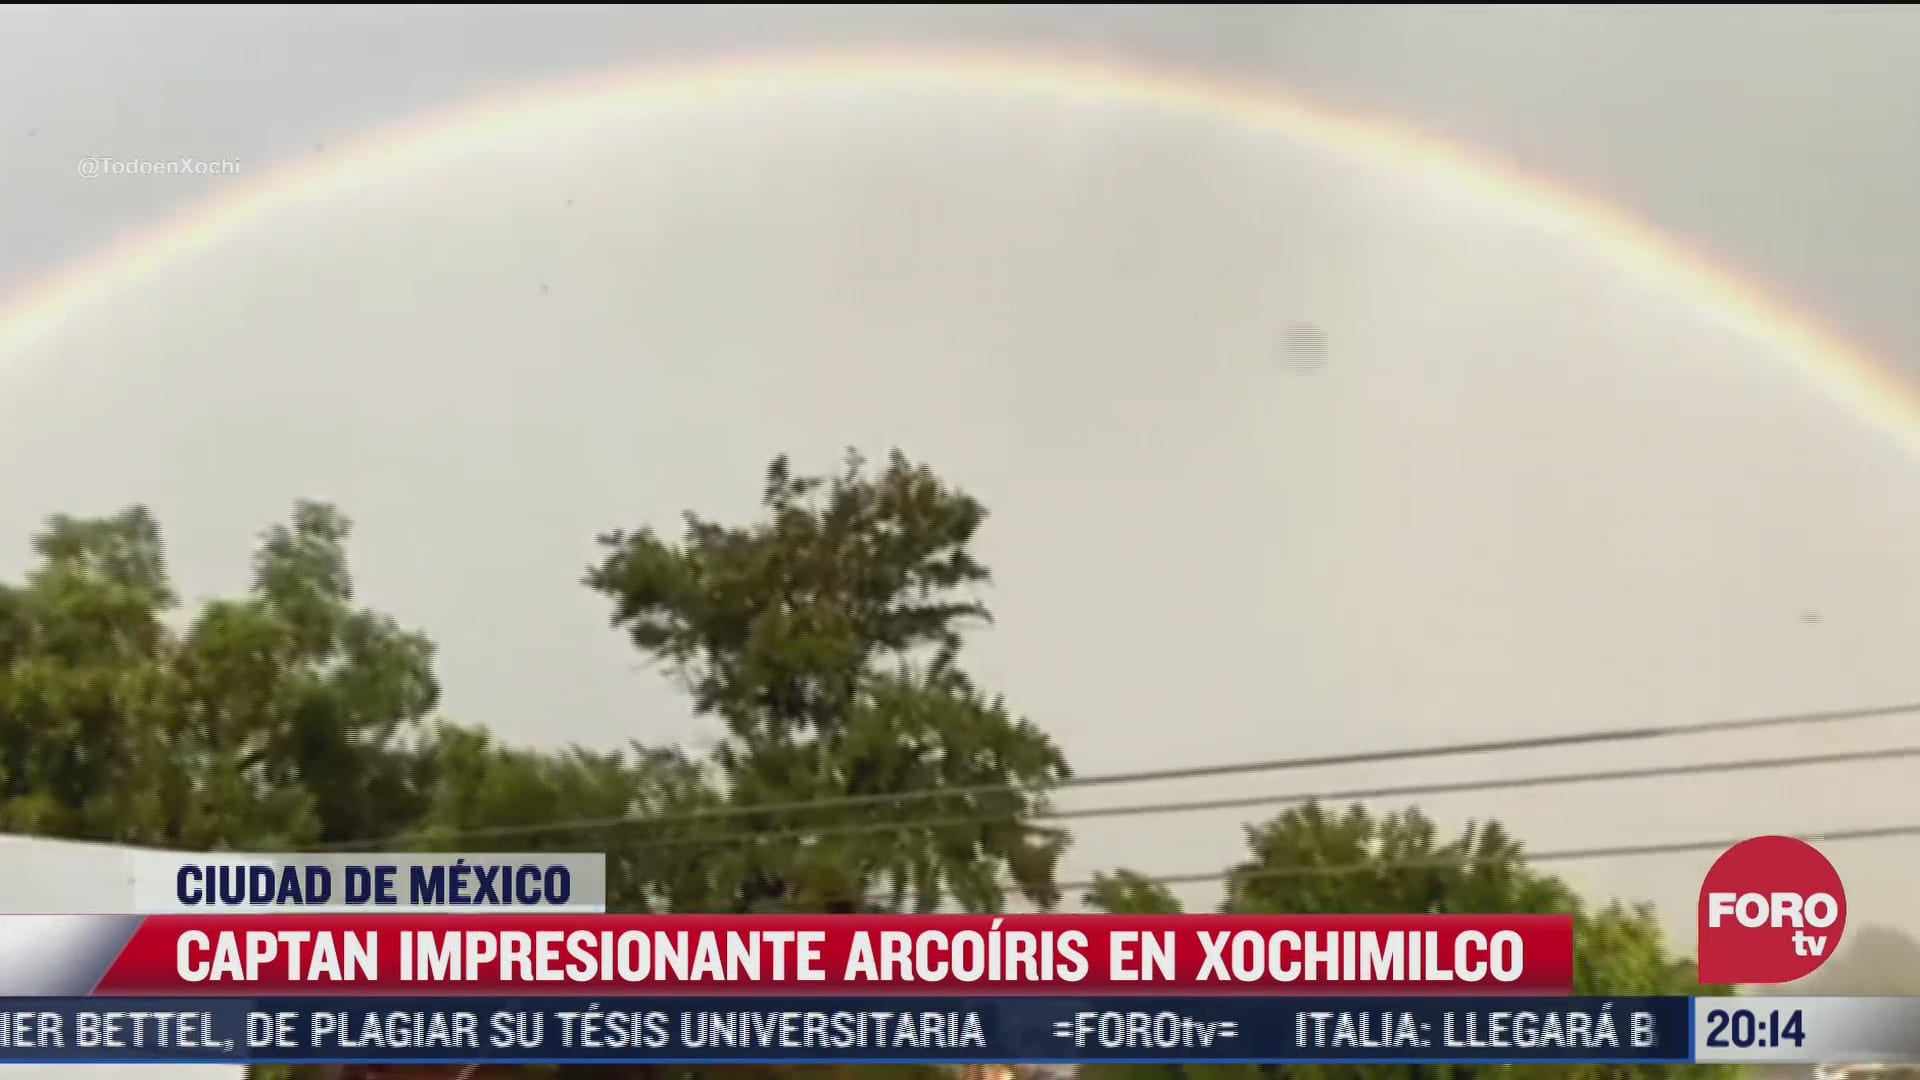 enorme arcoiris adorna el cielo de xochimilco tras intensa lluvia